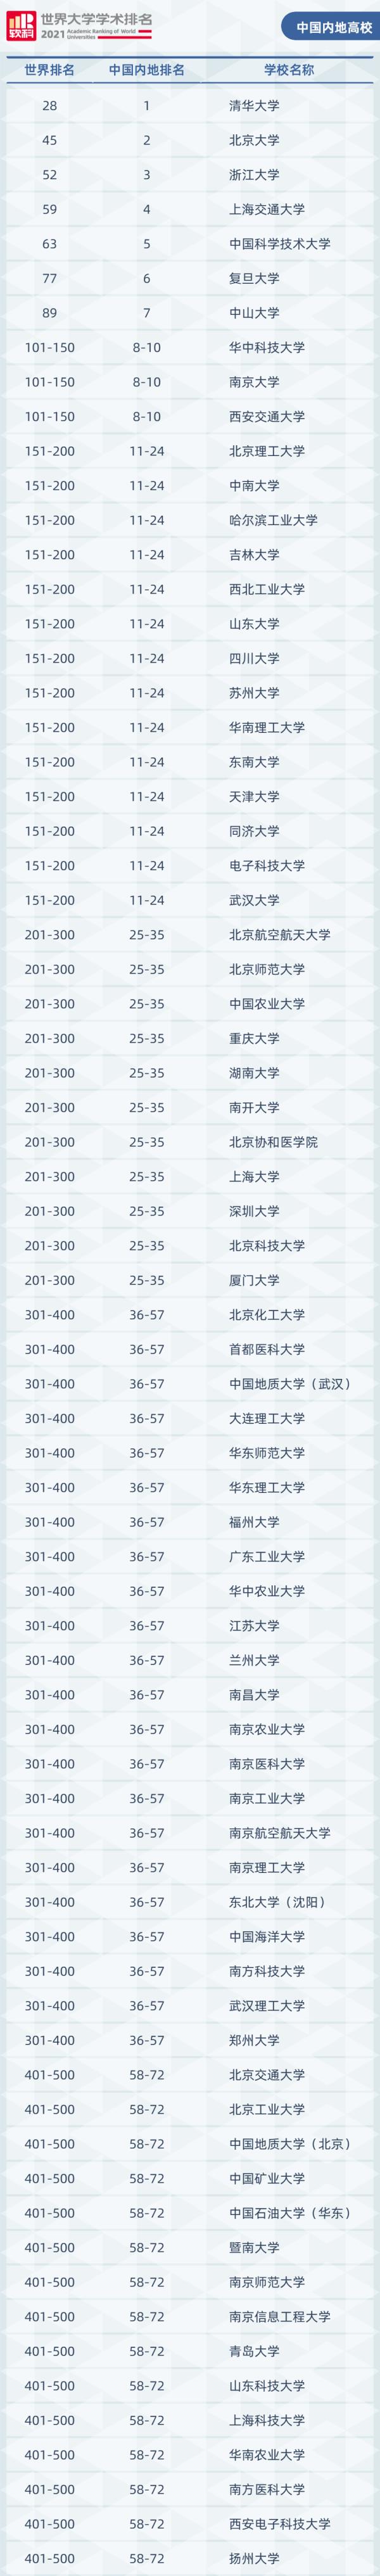 统计资讯系台湾大学有几所排名